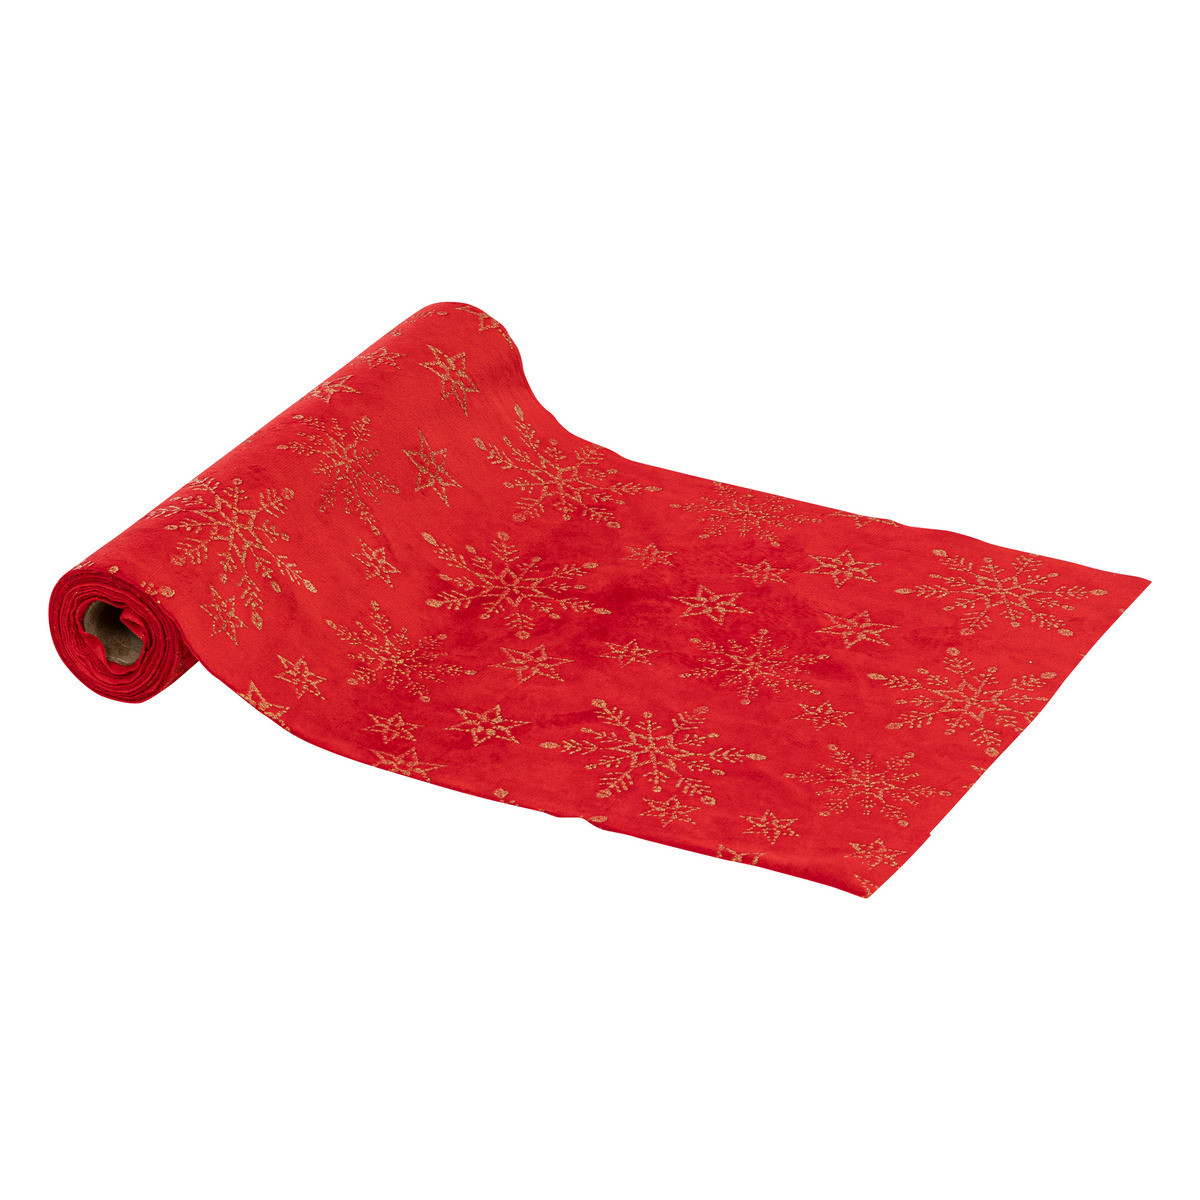 Chemin de table tissu en velours rouge avec flocons pailletés dorés 28 x 300 cm